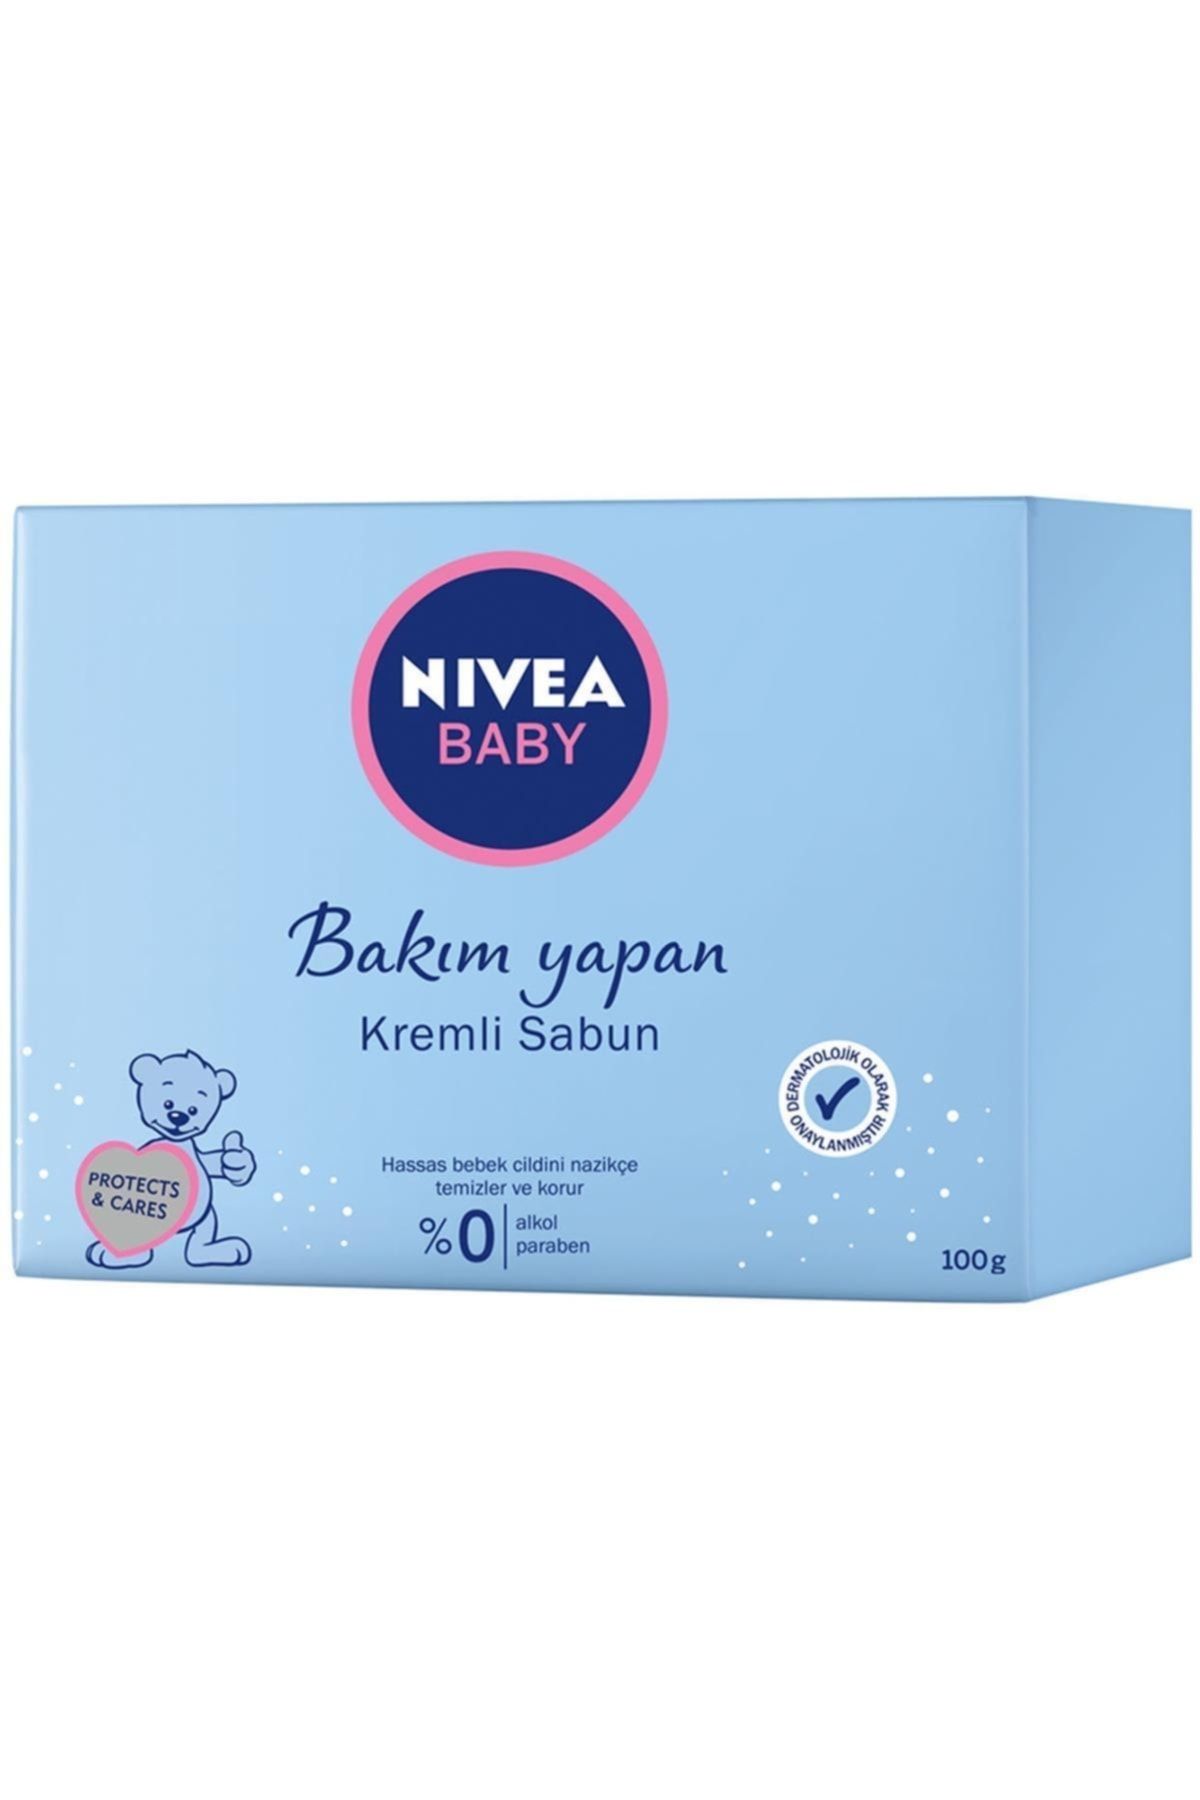 NIVEA Baby Bakım Yapan Kremli Sabun 100 ml Hassas Bebek Cildi Bebek Bakım Bebek Sabun